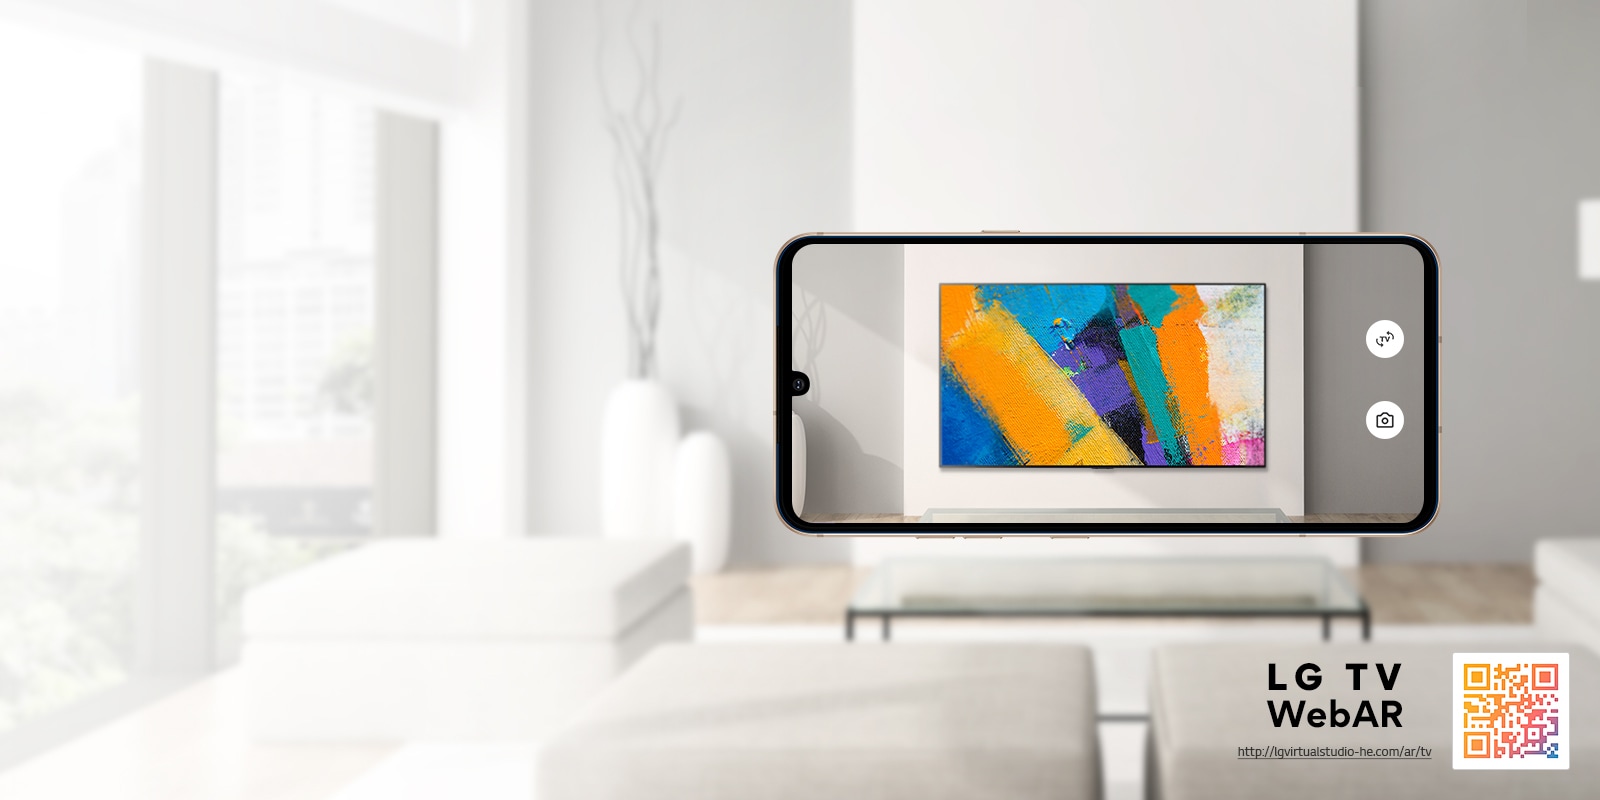 Webová AR simulácia televízora LG OLED TV. Obrázky z mobilného telefónu sa prekrývajú s minimalistickým priestorom. V pravej dolnej časti je QR kód.